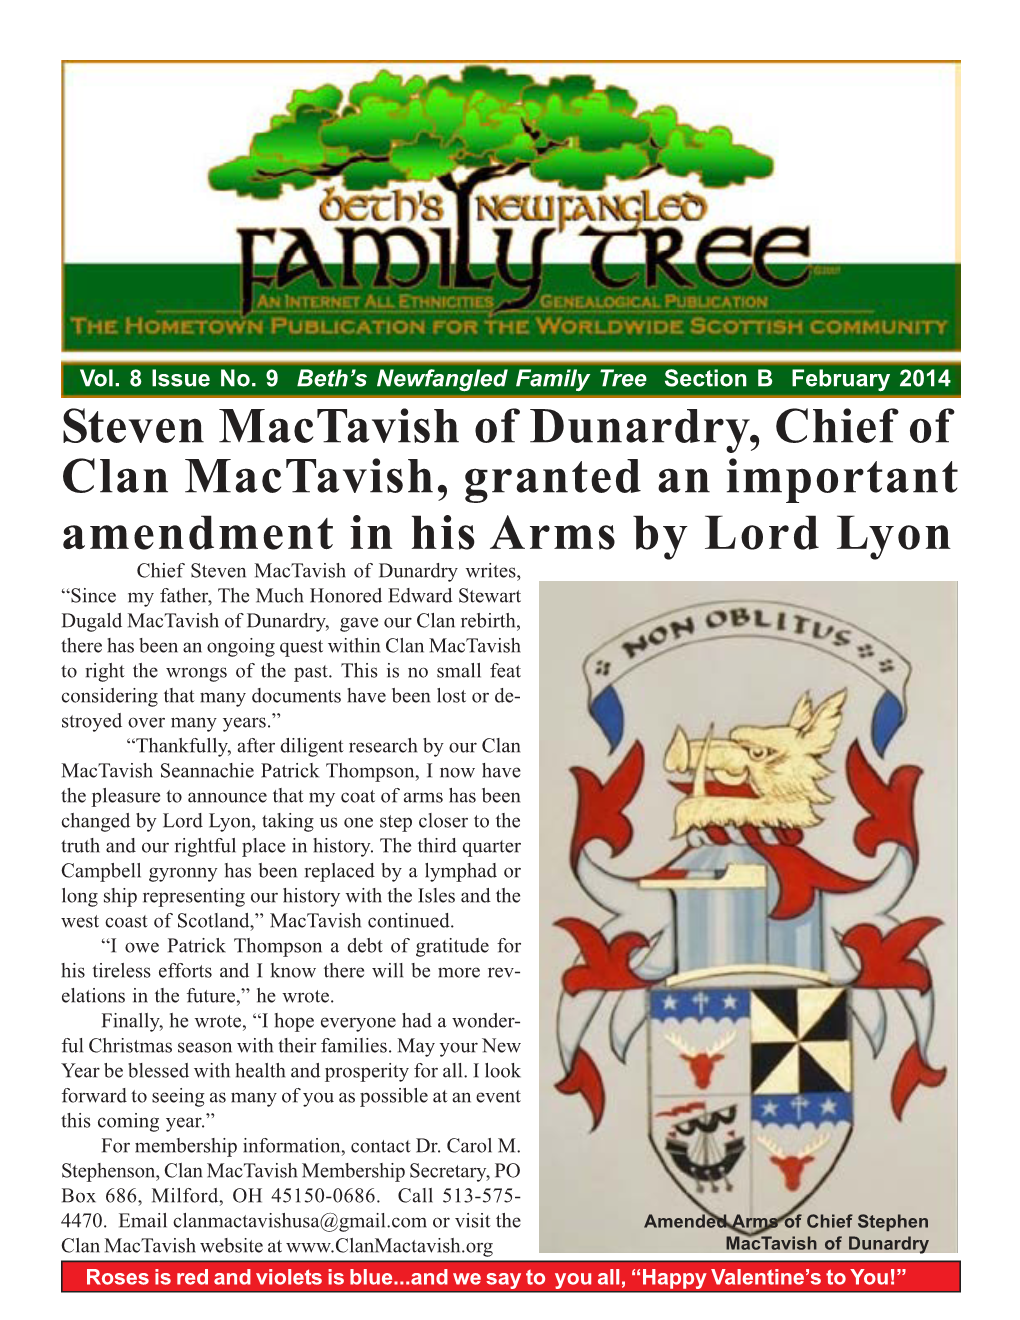 Steven Mactavish of Dunardry, Chief of Clan Mactavish, Granted An